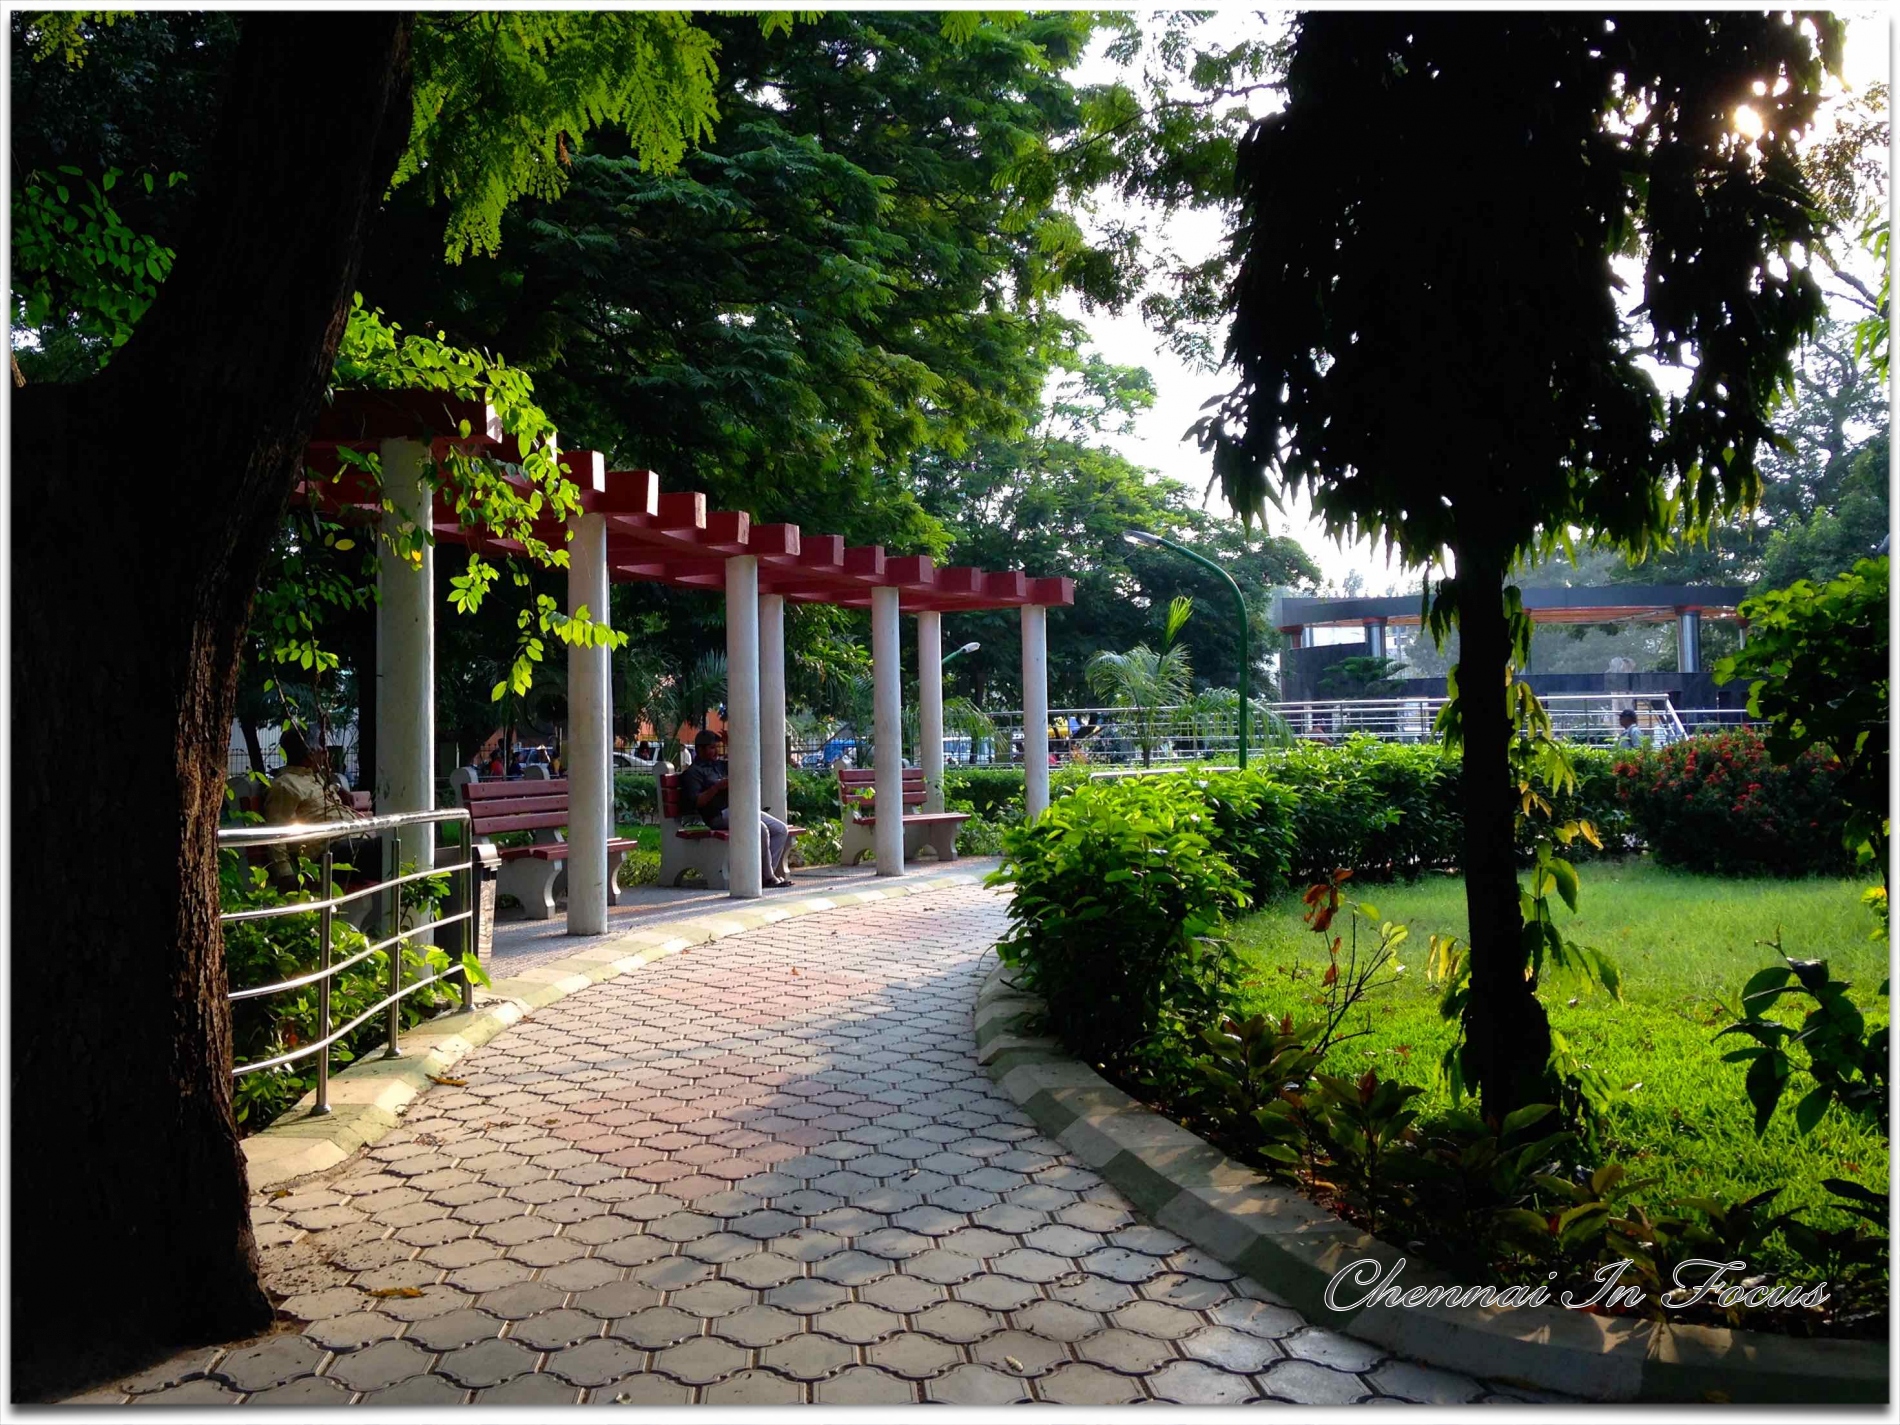 Natesan Park